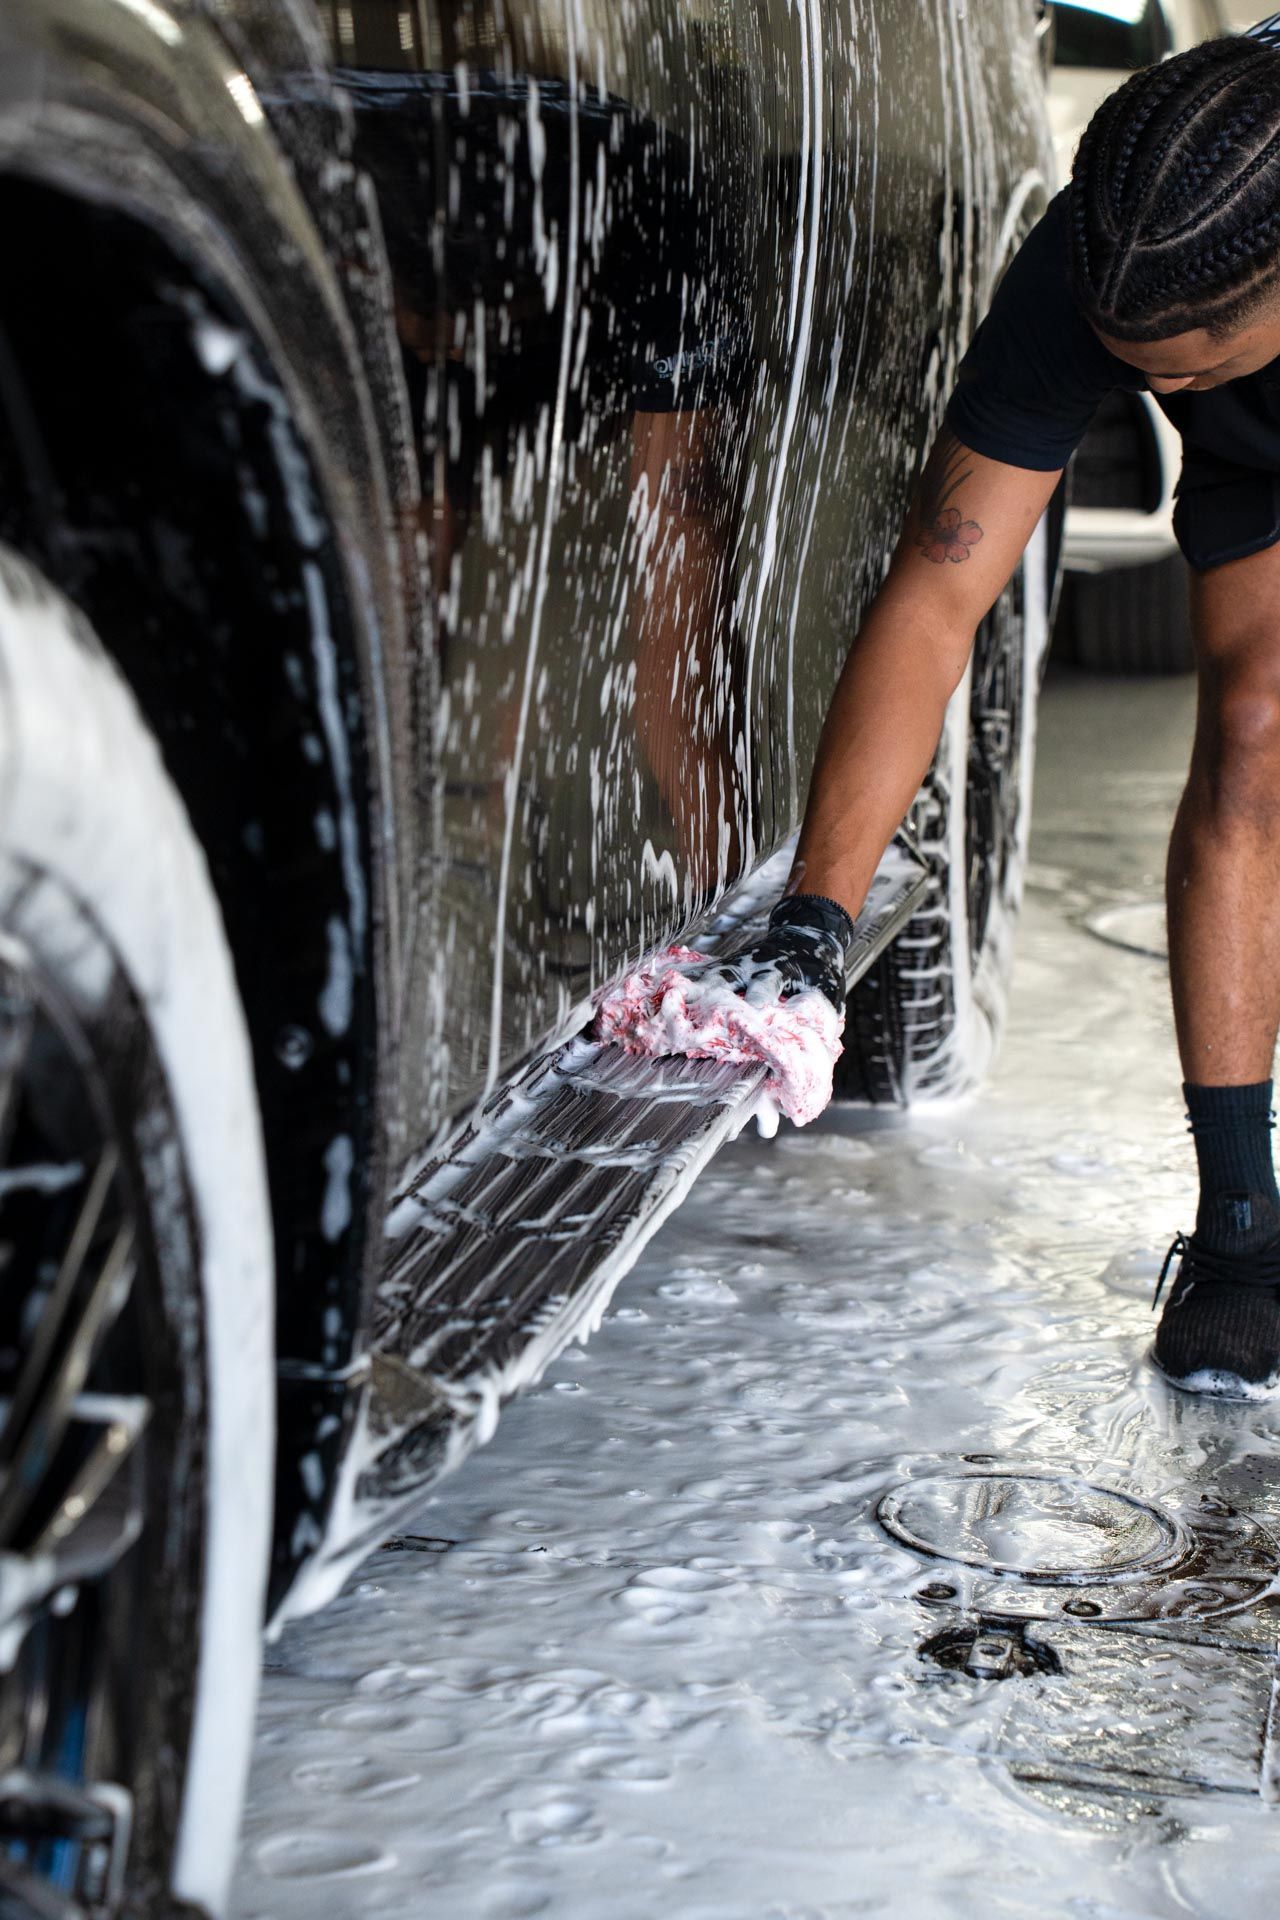 A man is washing a car in a car wash .